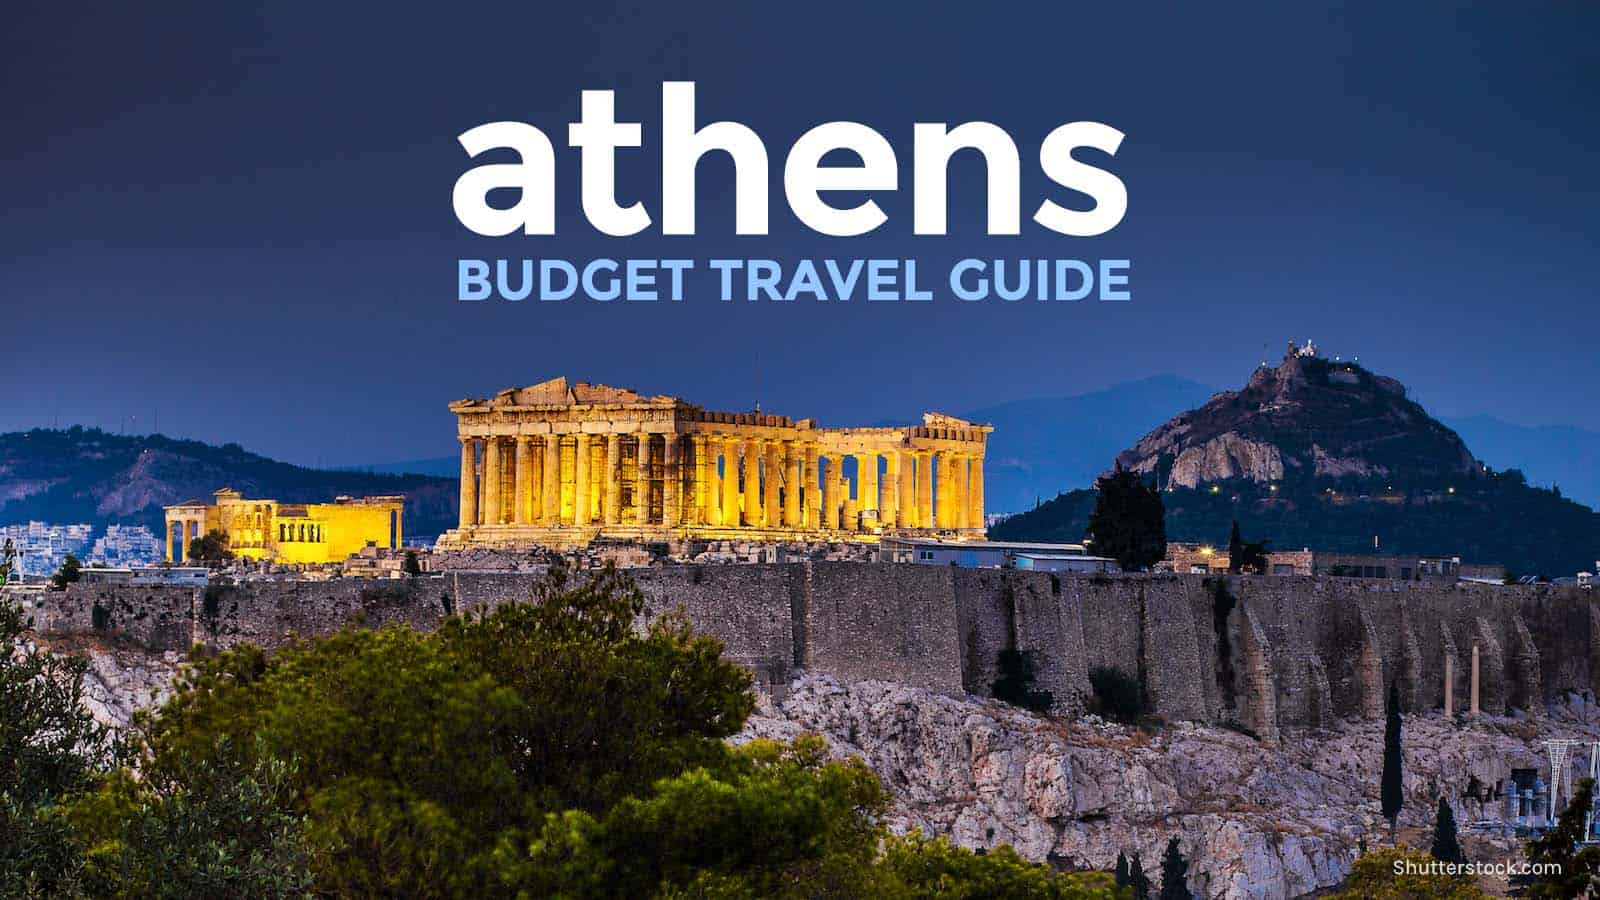 雅典旅游指南:行程，预算，可做的事情